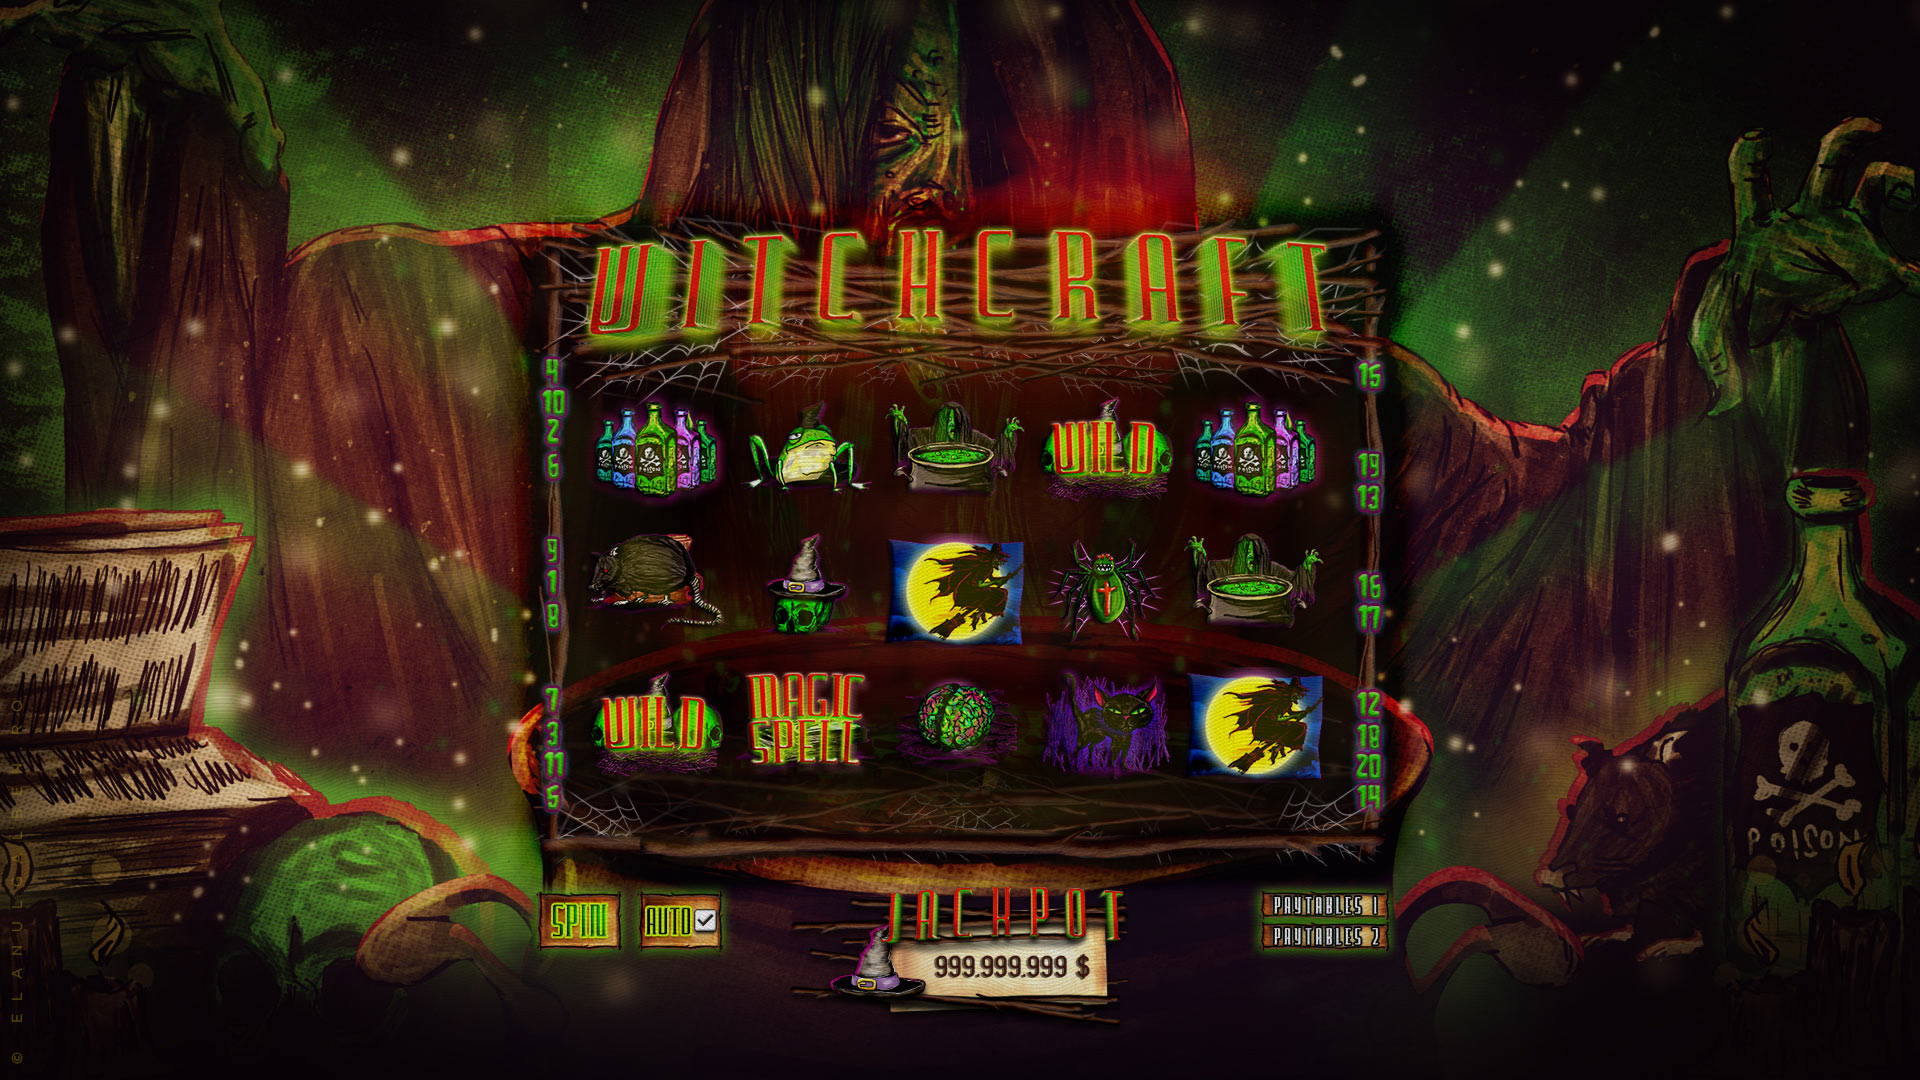 Online Casino Game Design - Slot machine game - Witchcraft